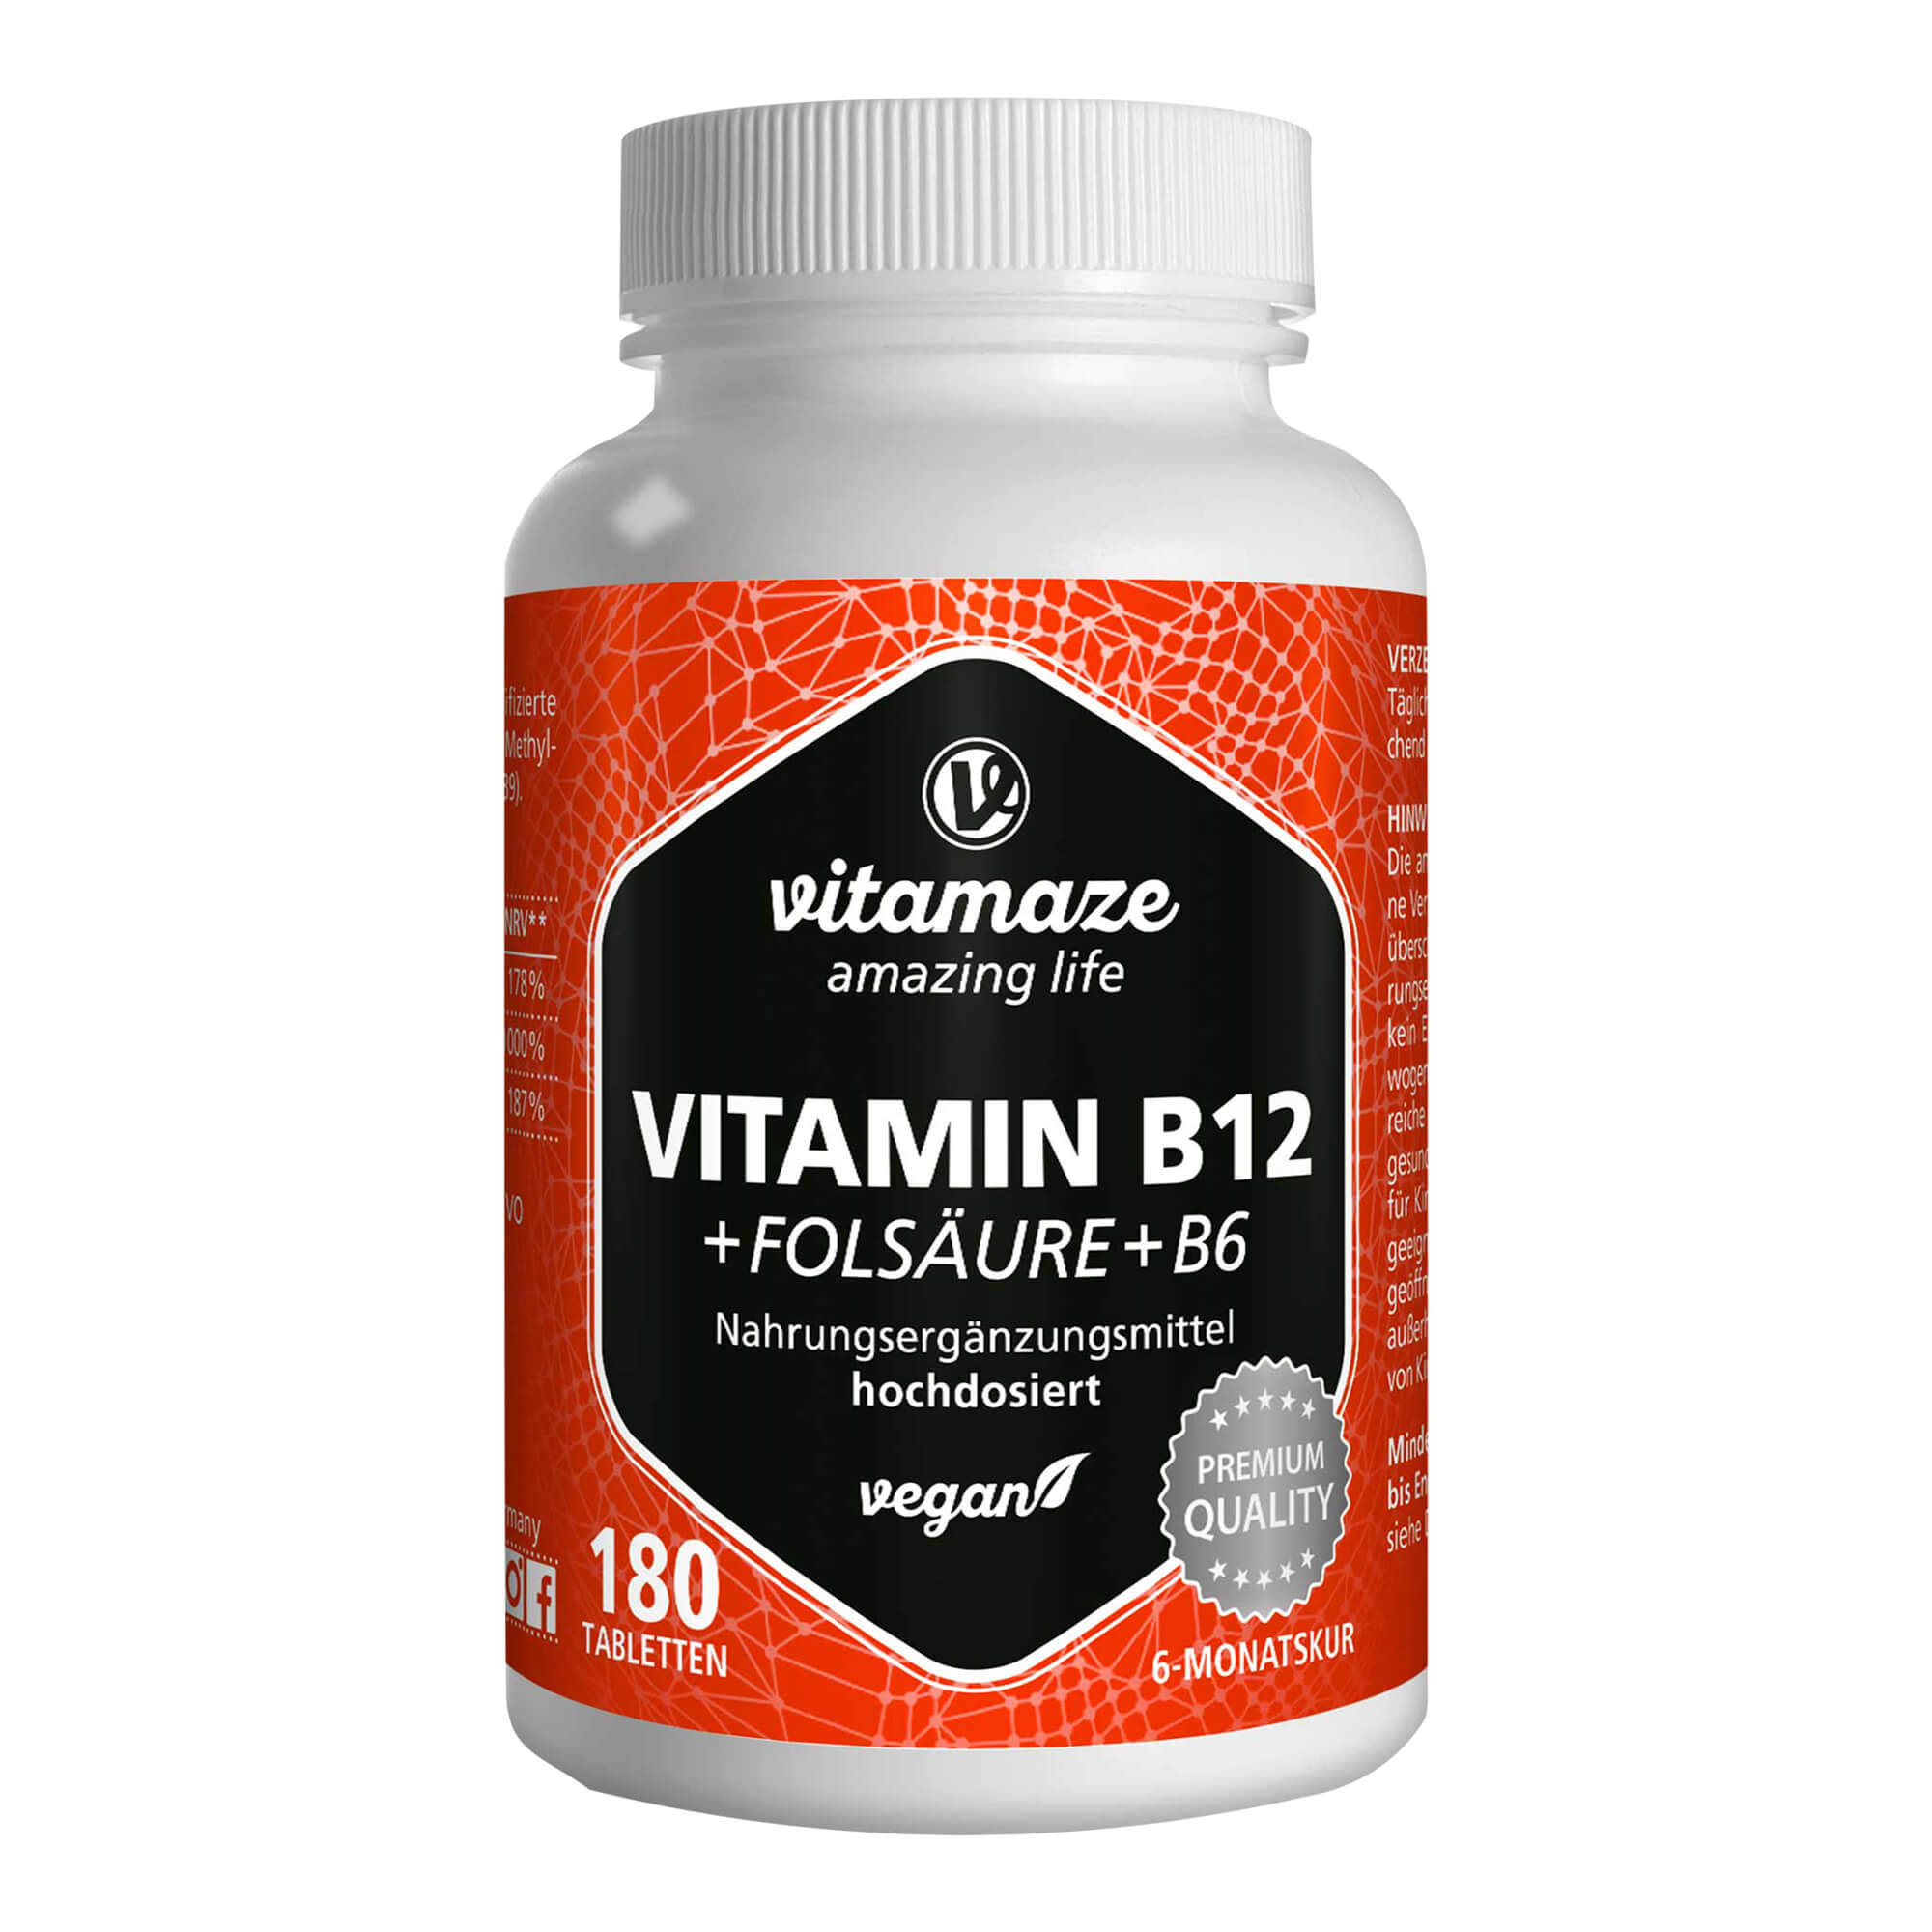 Nahrungsergänzungsmittel mit Vitamin B12, Folsäure und Vitamin B6. Für körperliche und geistige Vitalität.